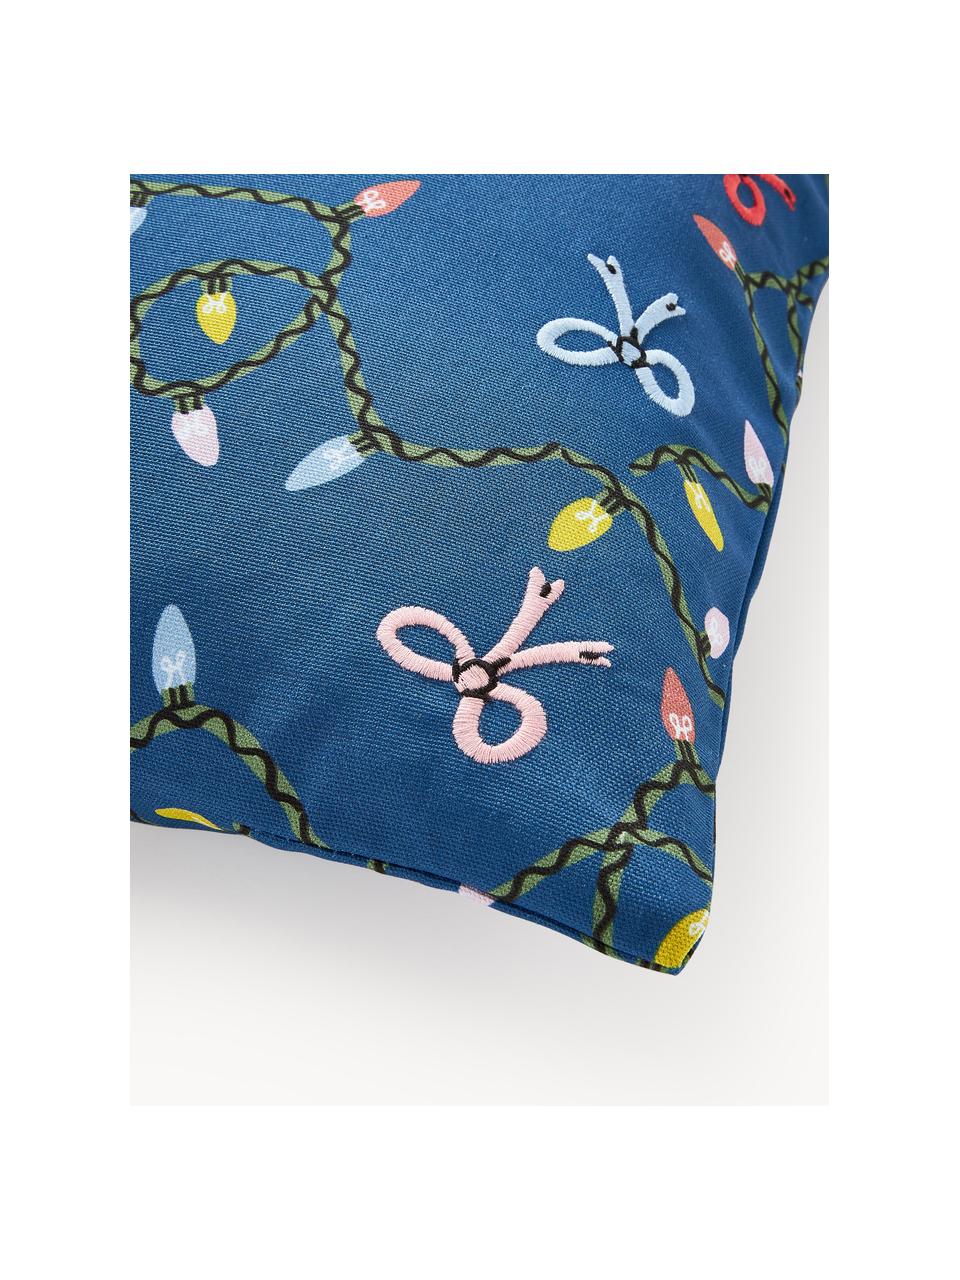 Poszewka na poduszkę Ribbons, 100% bawełna, Niebieski, wielobarwny, S 45 x D 45 cm